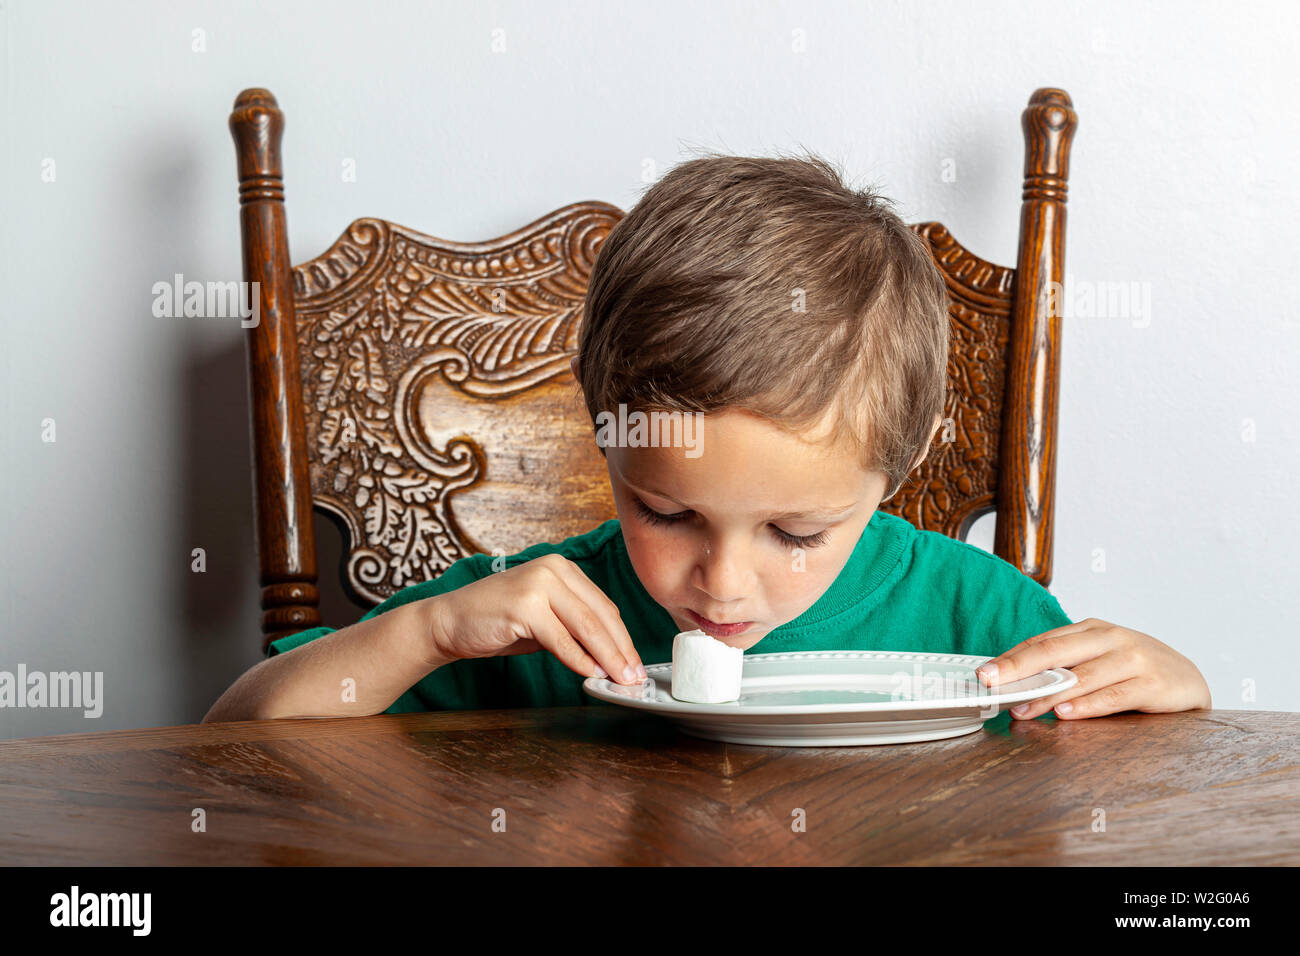 Un jeune garçon assis à une table à la guimauve en un seul près de son visage dans le cadre de l'expérience de guimauve. Banque D'Images